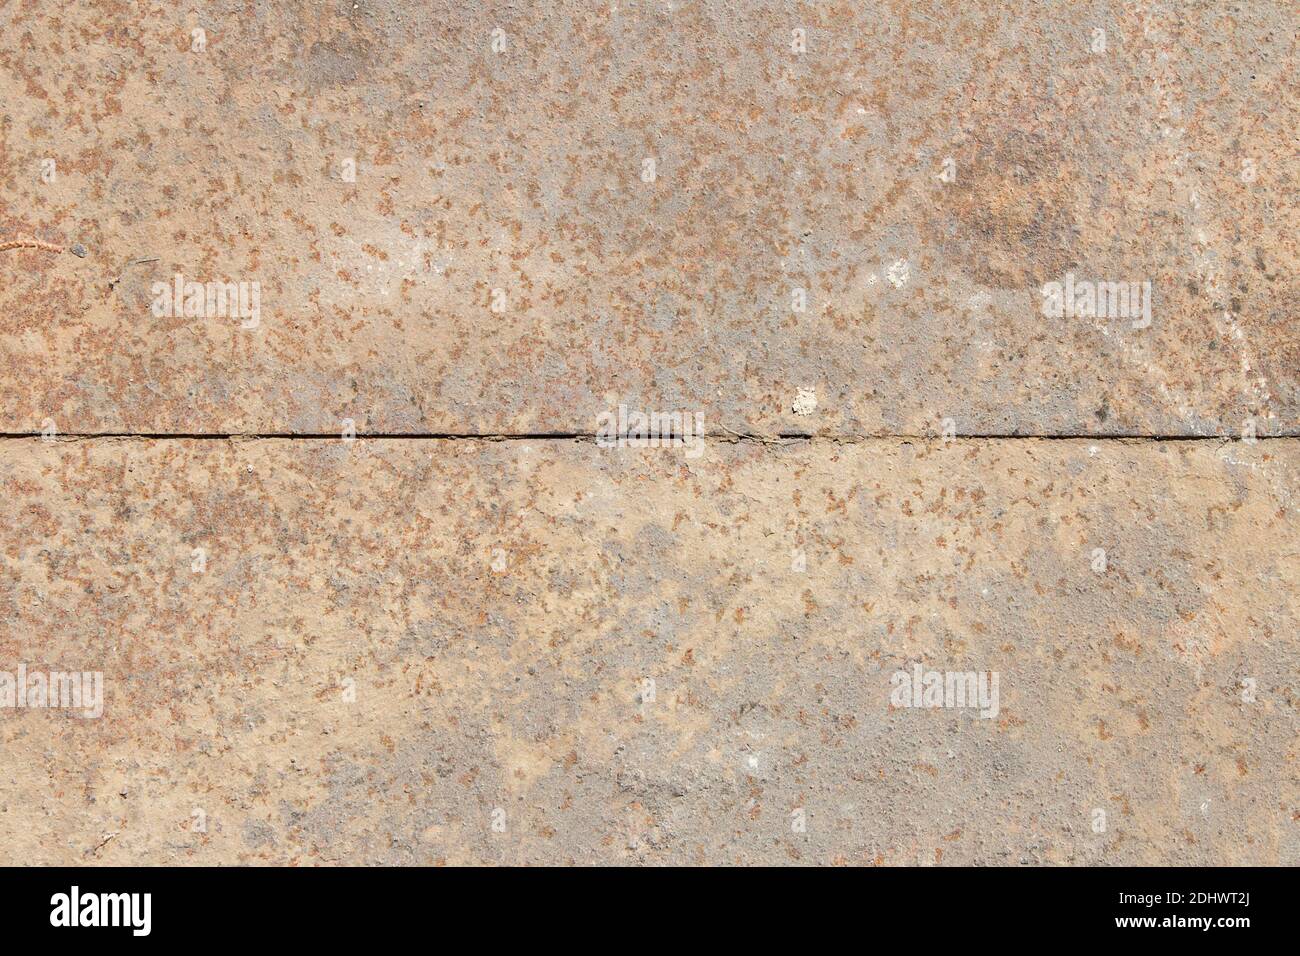 Una lamiera ricoperta di ruggine e sabbia è divisa in due da una linea retta. Sfondo texture astratto. Foto Stock